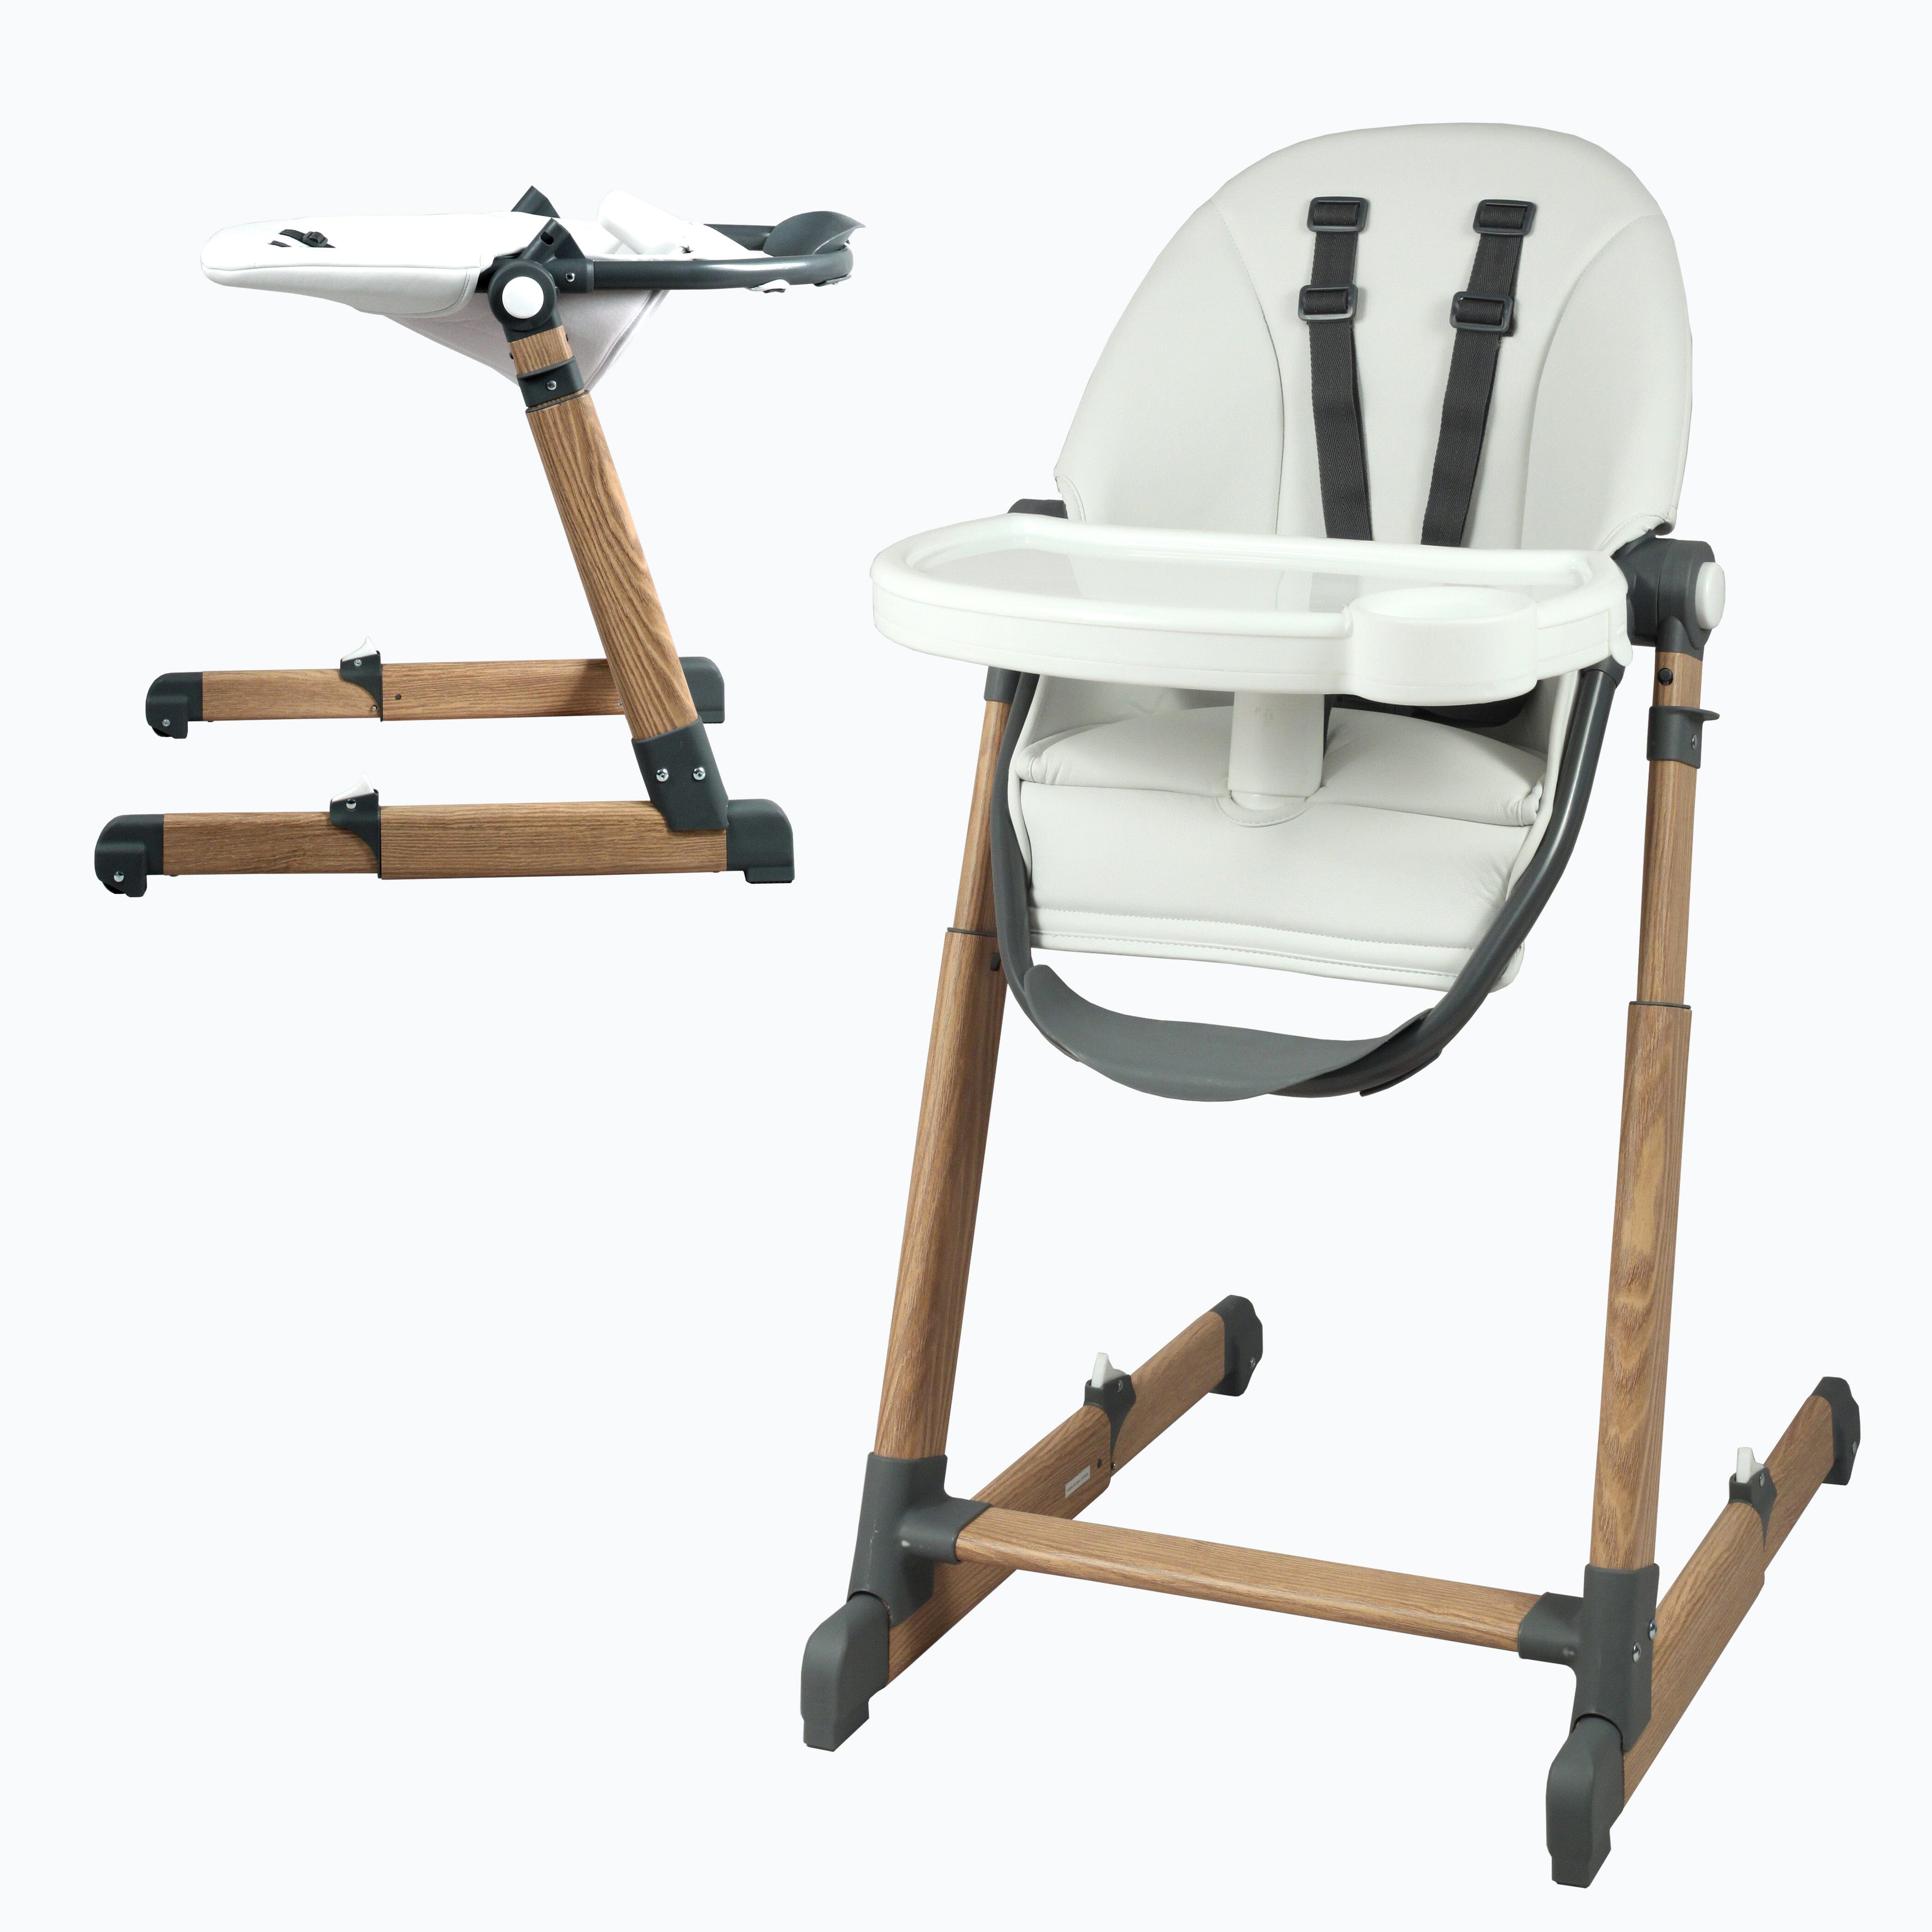 Chaise haute bébé - Confortable et pliable